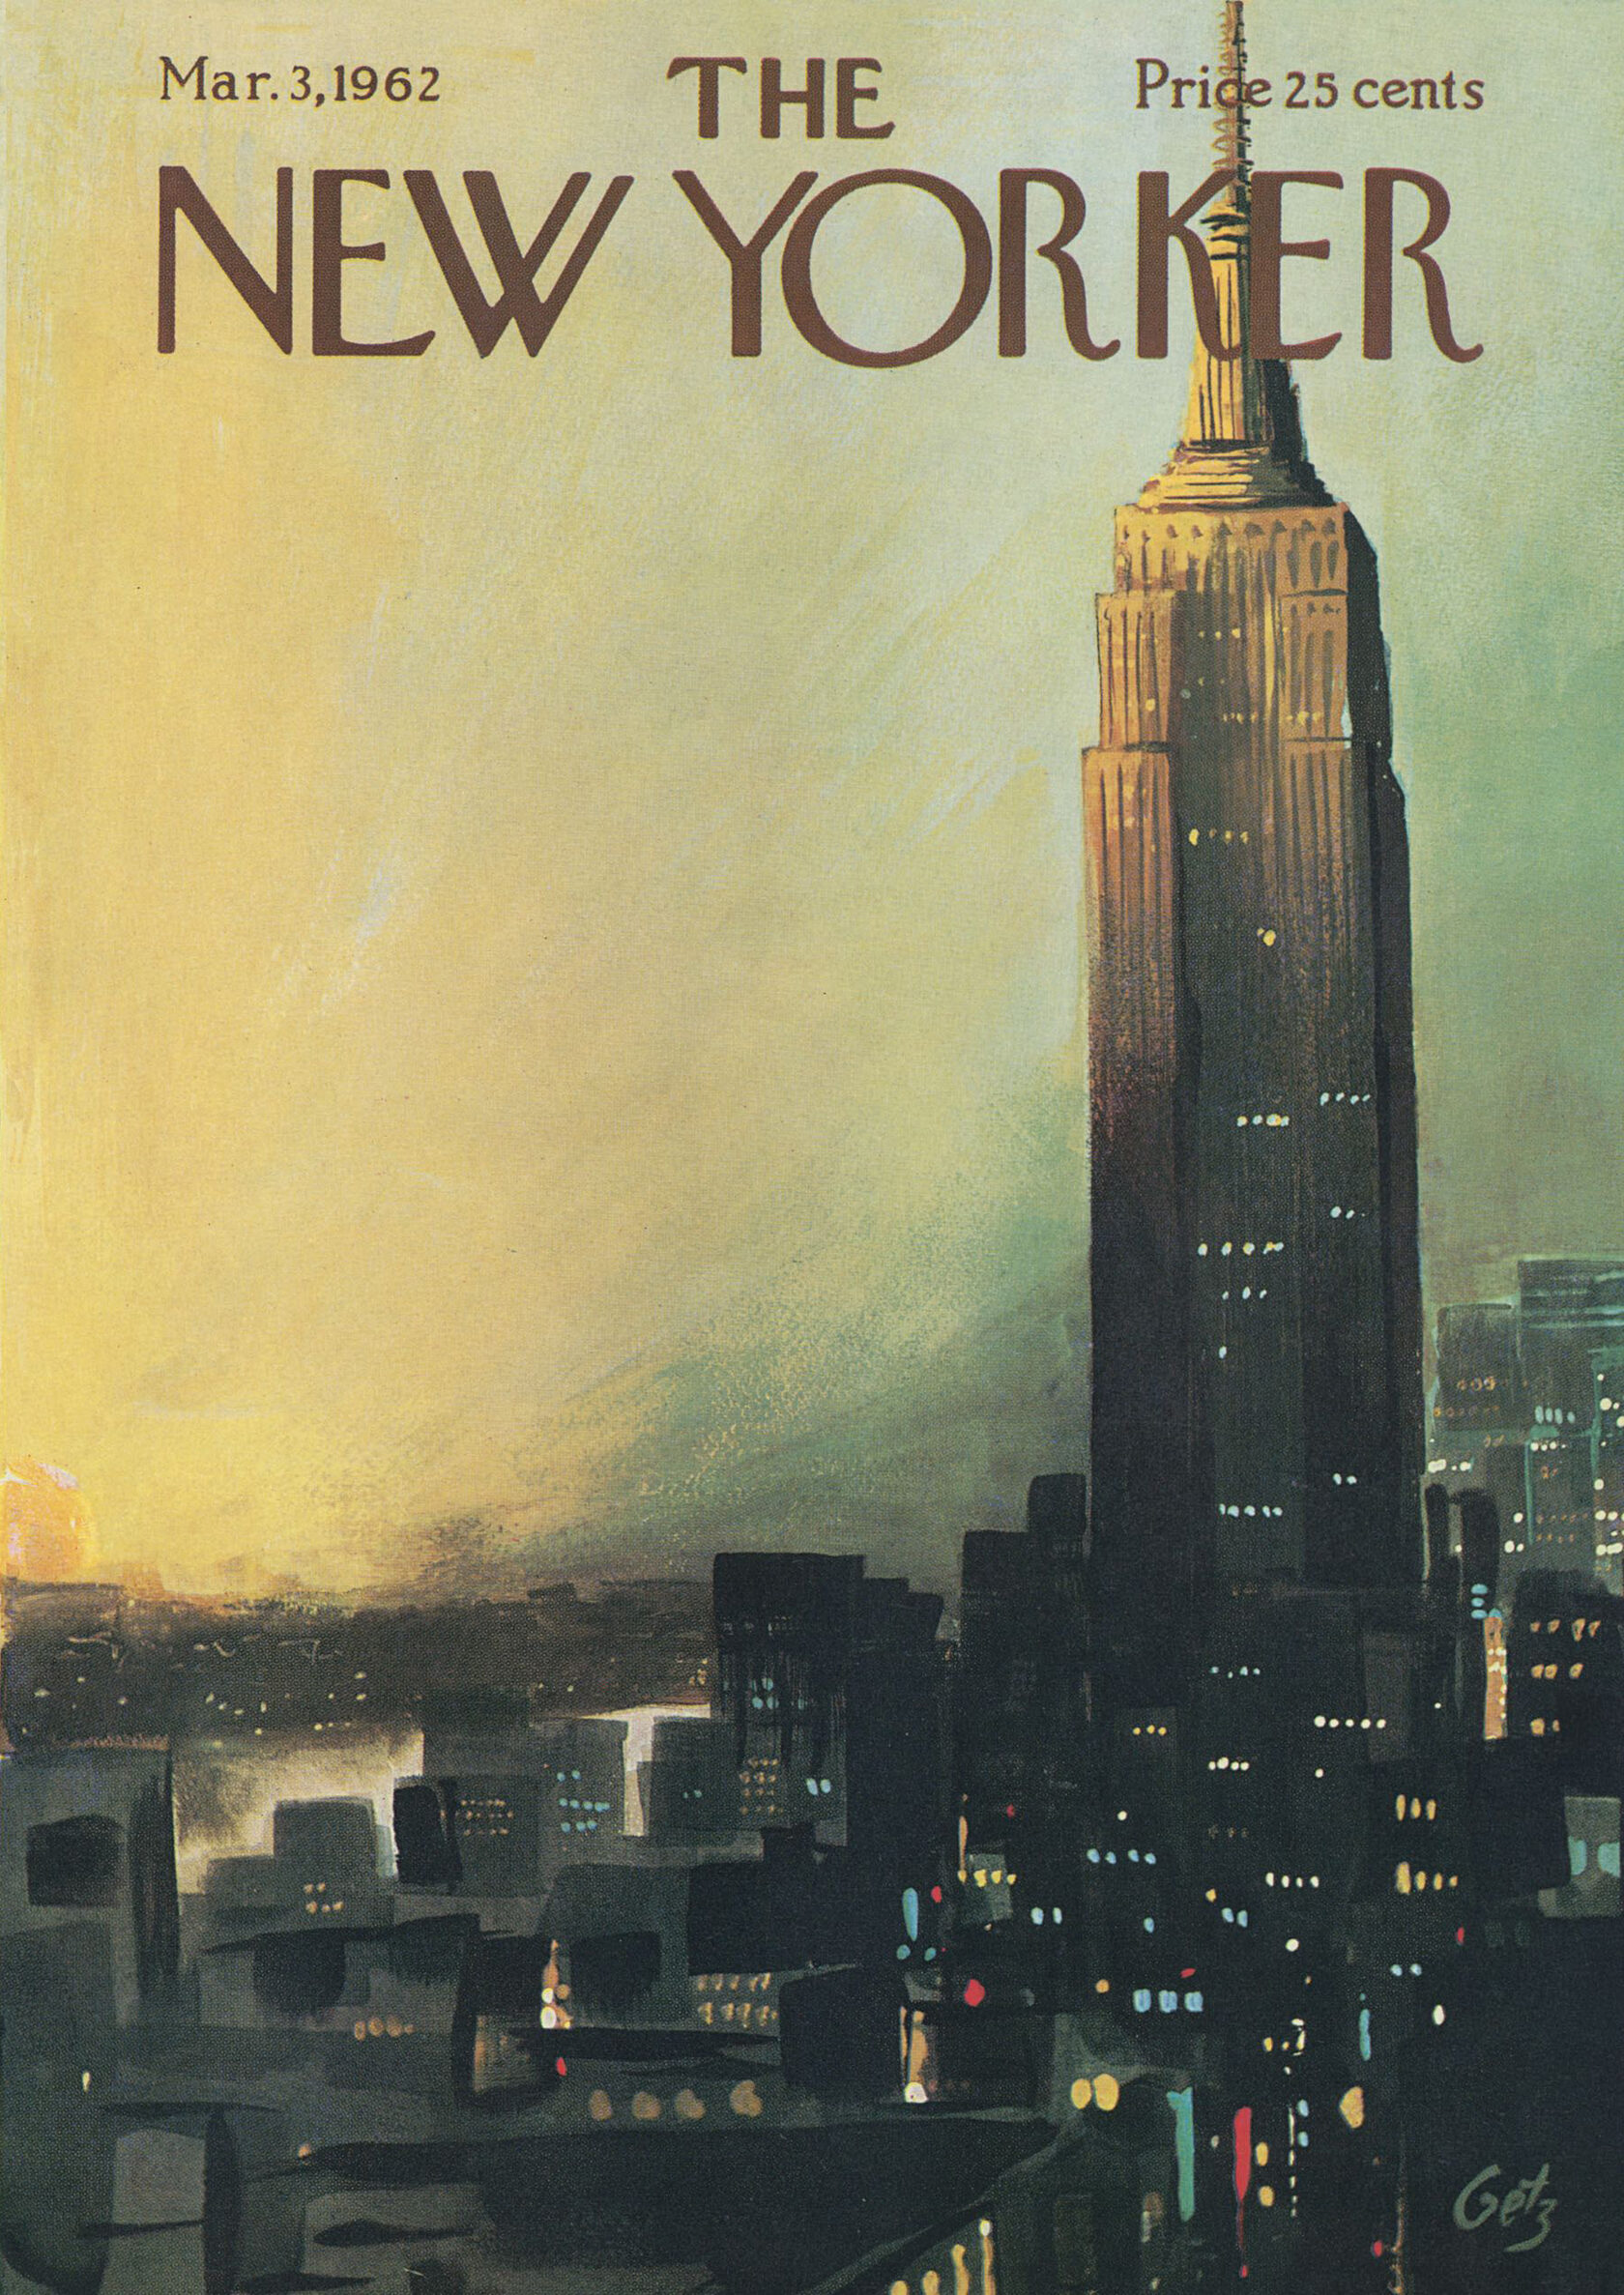 Журнал new yorker. The New Yorker Magazine обложки. The New Yorker обложки Нью Йорк. Винтажные постеры New Yorker. Нью Йорк журнал 1939 обложка.